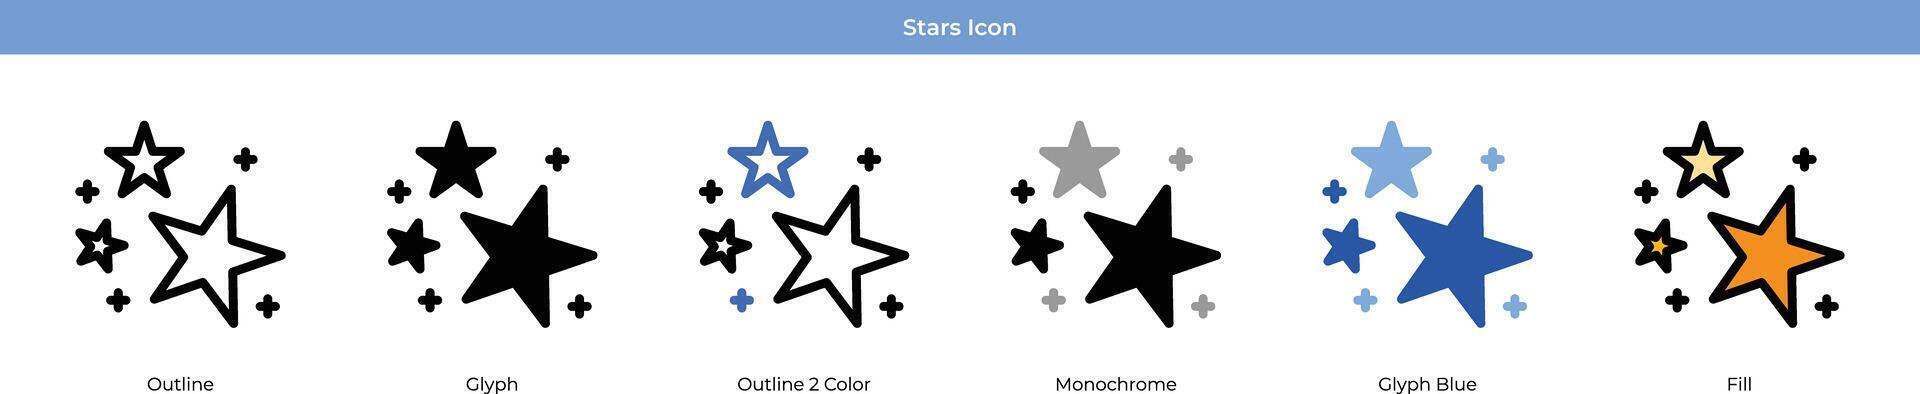 stjärnor ikon uppsättning vektor